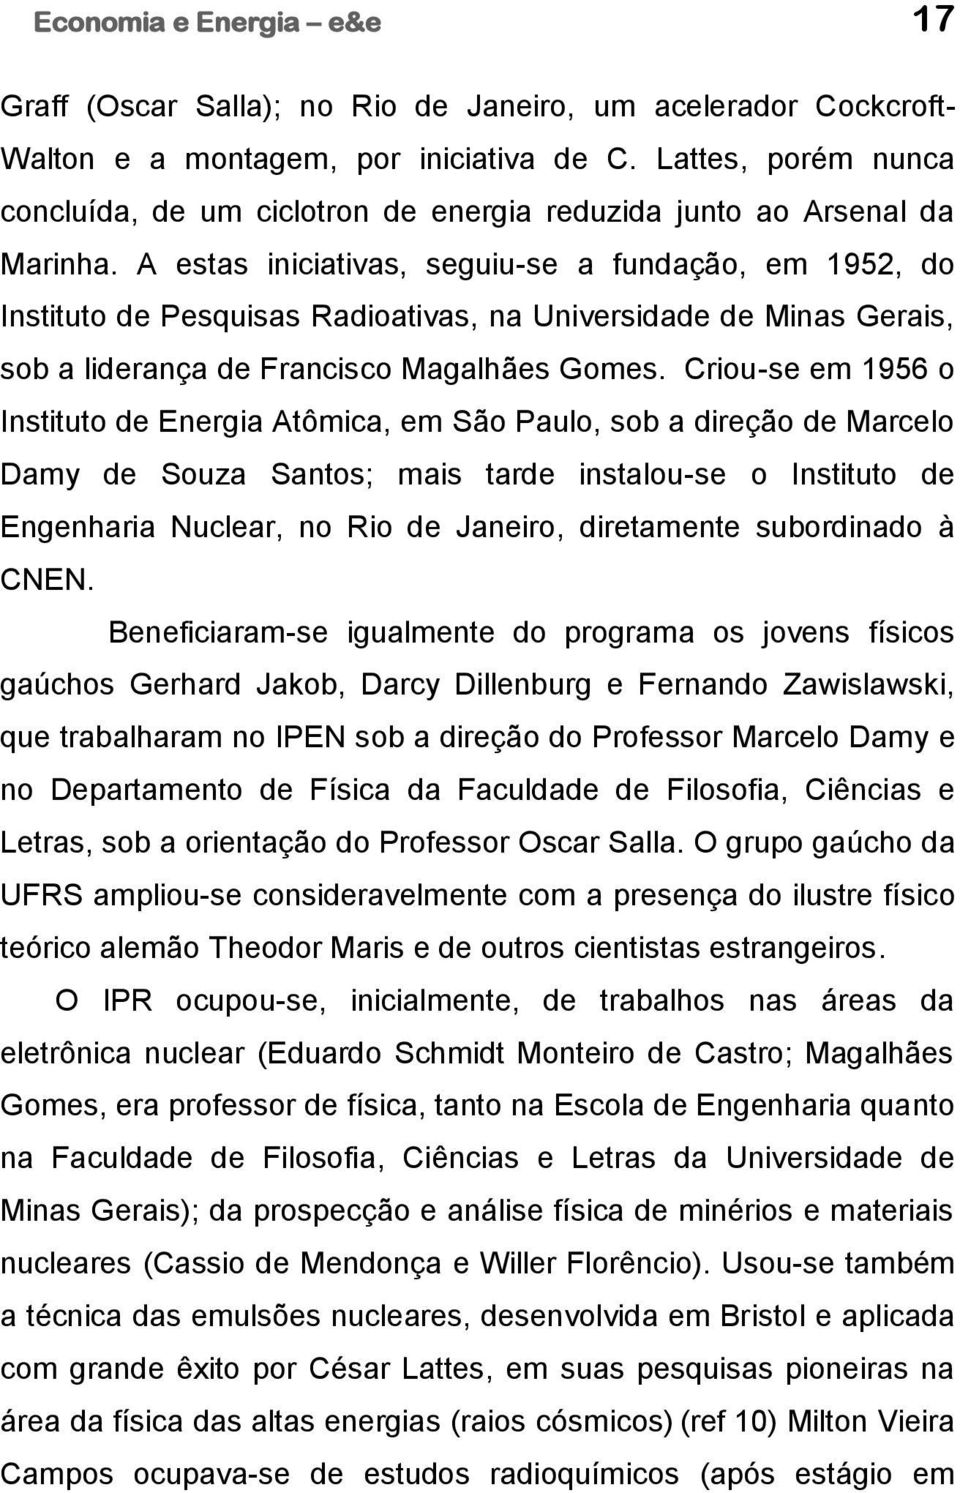 A estas iniciativas, seguiu-se a fundação, em 1952, do Instituto de Pesquisas Radioativas, na Universidade de Minas Gerais, sob a liderança de Francisco Magalhães Gomes.